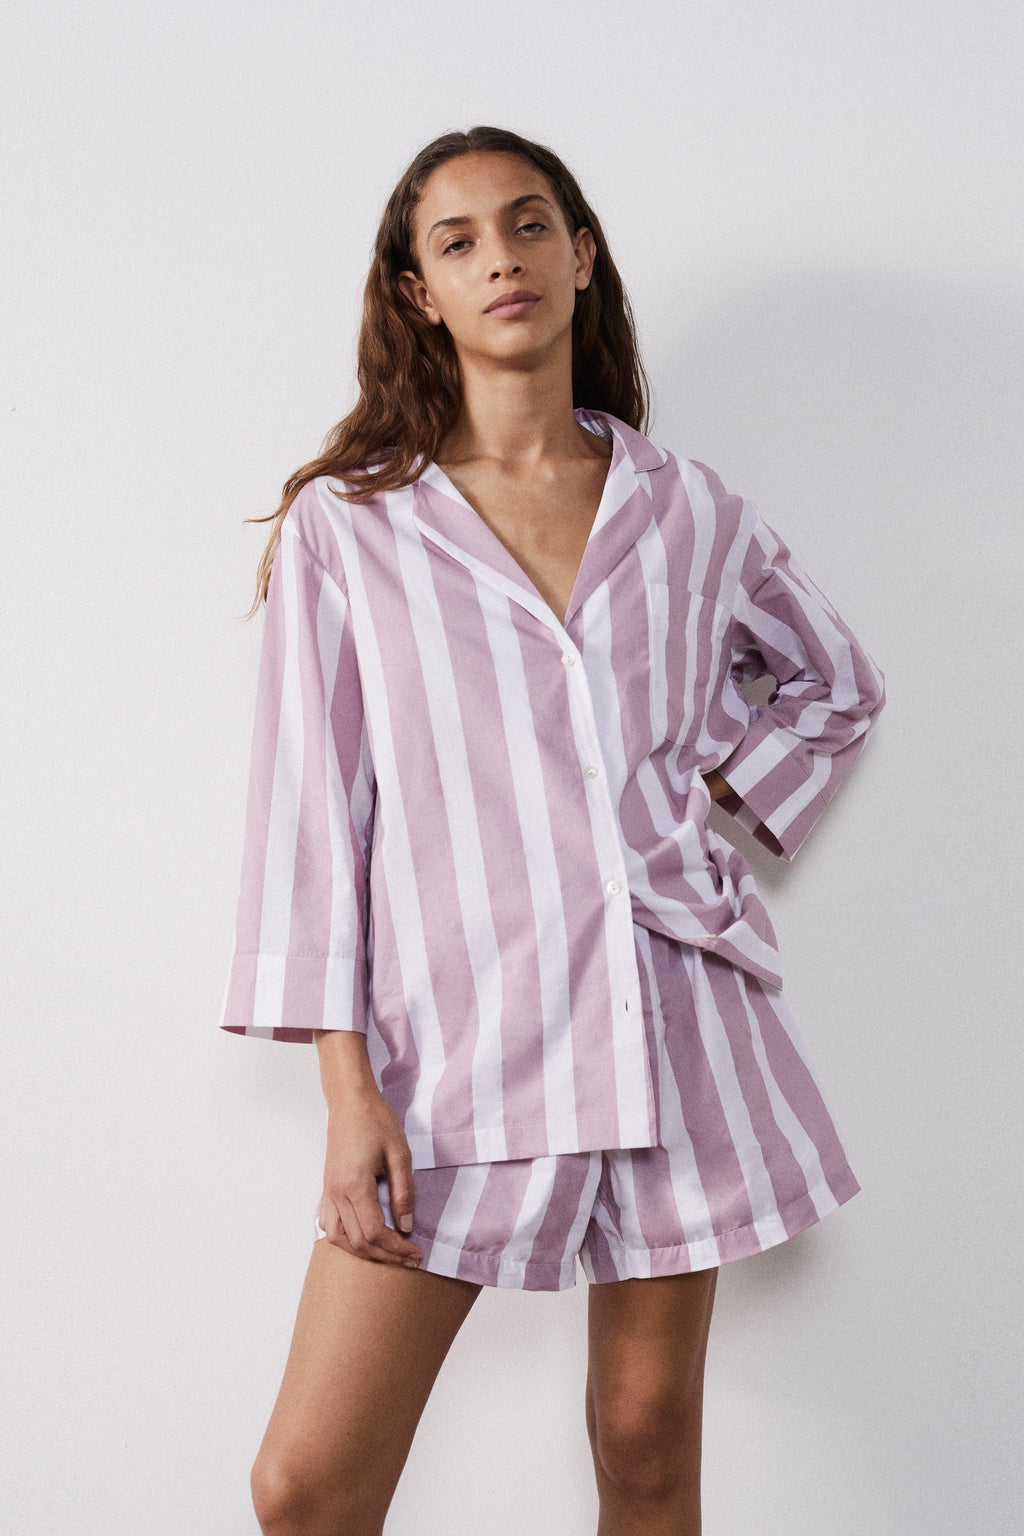 Men's Pyjamas - Men's Sleepwear & Robes | Peter Alexander